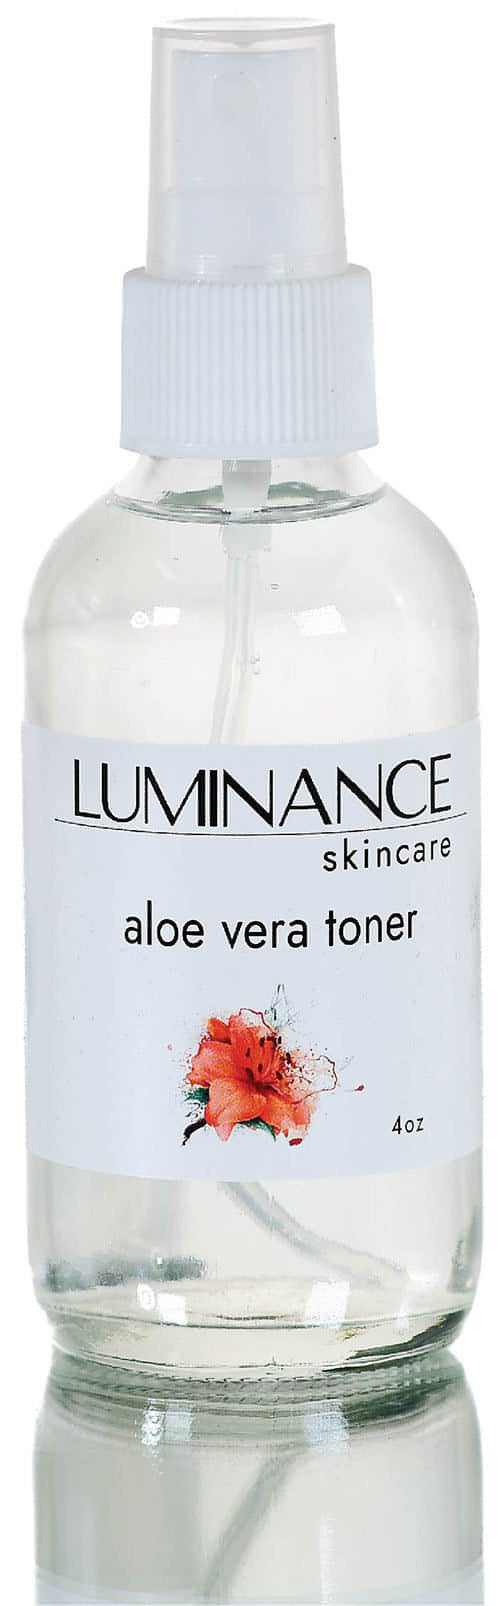 Aloe Vera Luminance Skincare Toner. 4 oz. Organic. 100% Plant based. No alcohols or astringents.